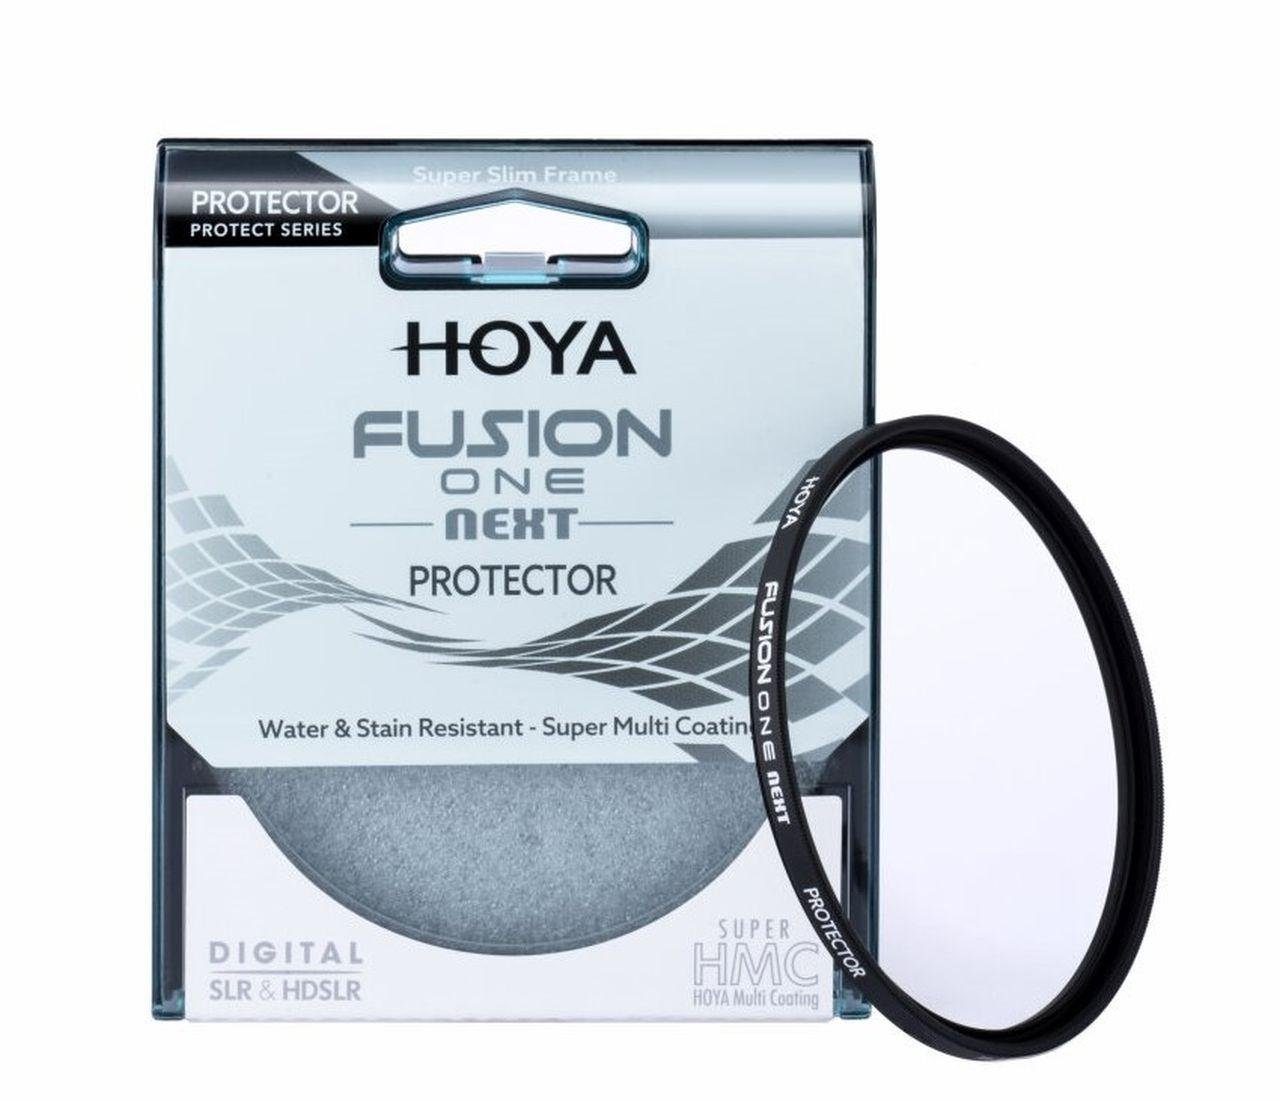 Hoya Fusion ONE Next Protector 62mm Objektivzubehör | Objektivfilter